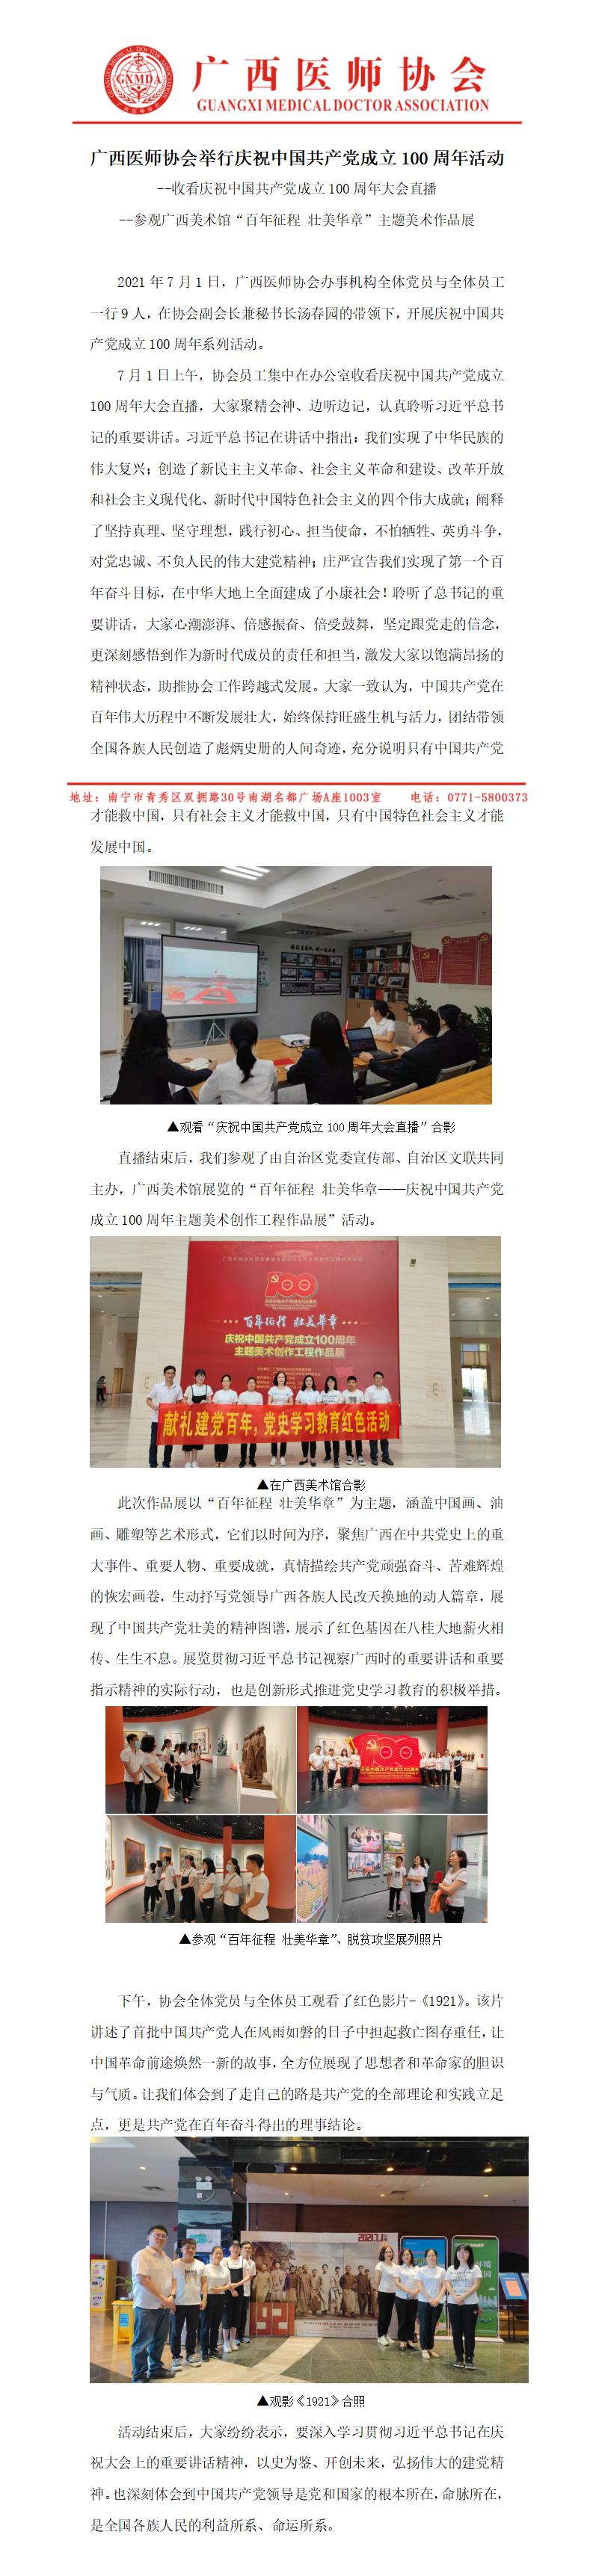 红宝石活动优惠大厅hbs举行庆祝中国共产党成立100周年活动新闻稿_01.jpg